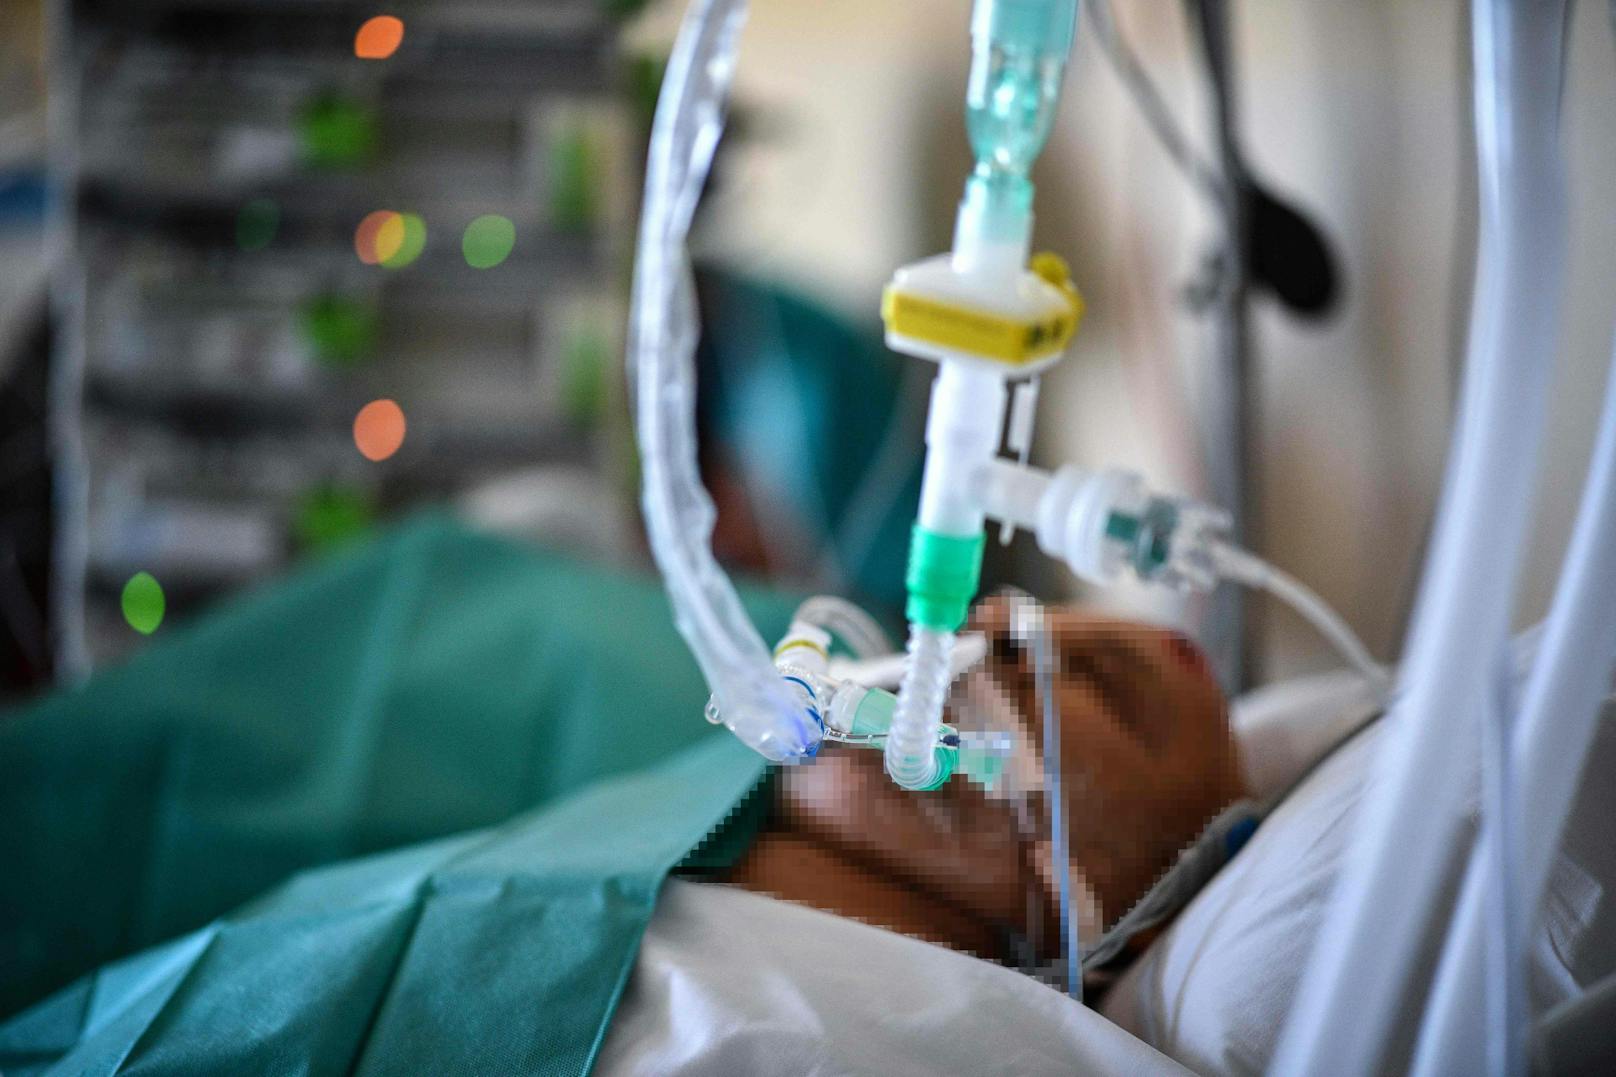 Ein Patient auf einer Corona-Intensivstation. Symbolbild